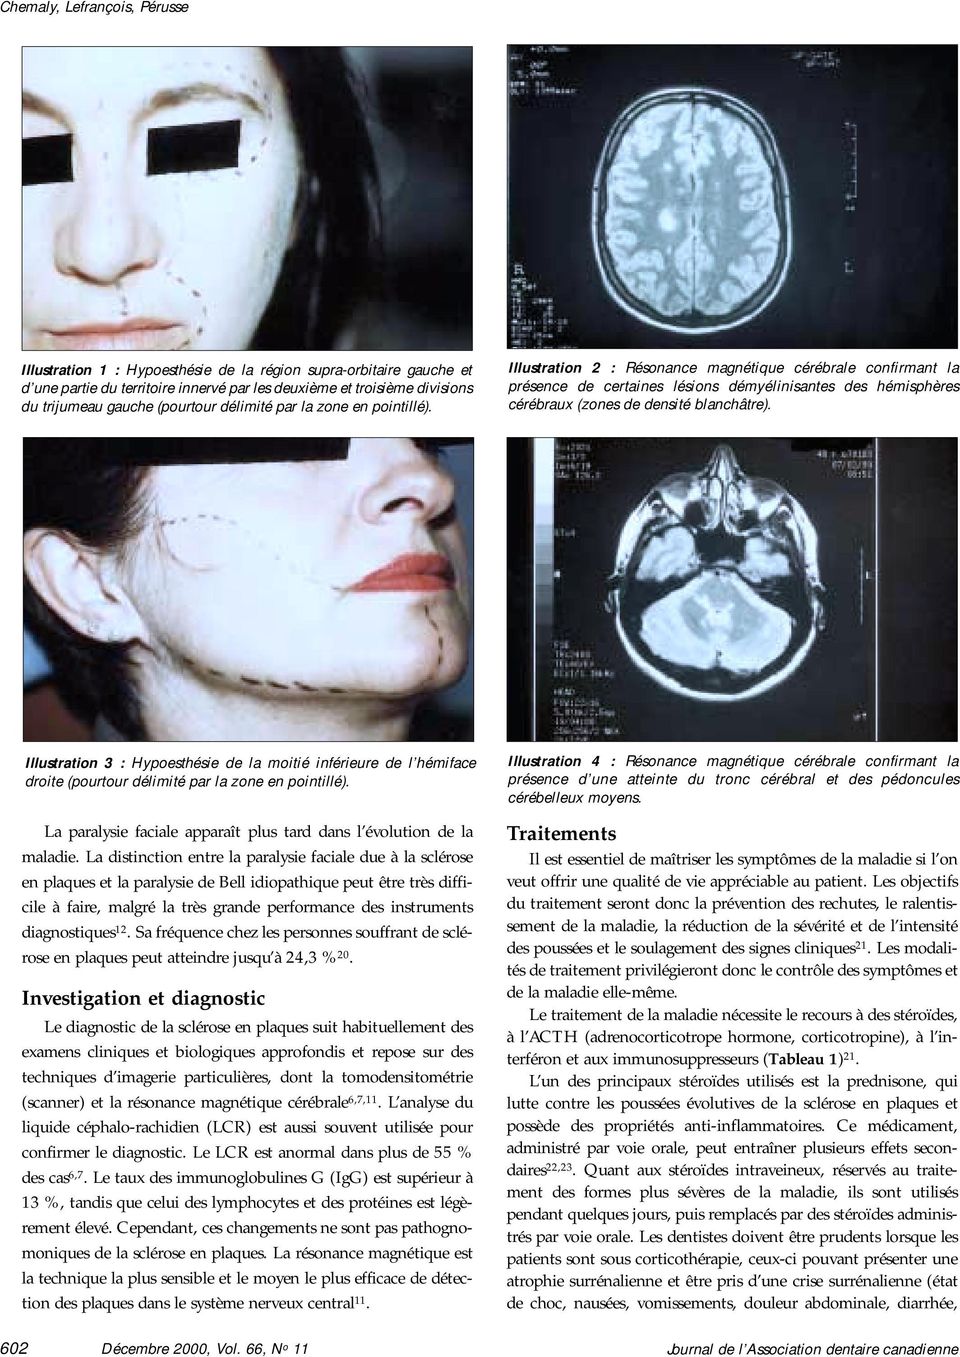 Illustration 2 : Résonance magnétique cérébrale confirmant la présence de certaines lésions démyélinisantes des hémisphères cérébraux (zones de densité blanchâtre).